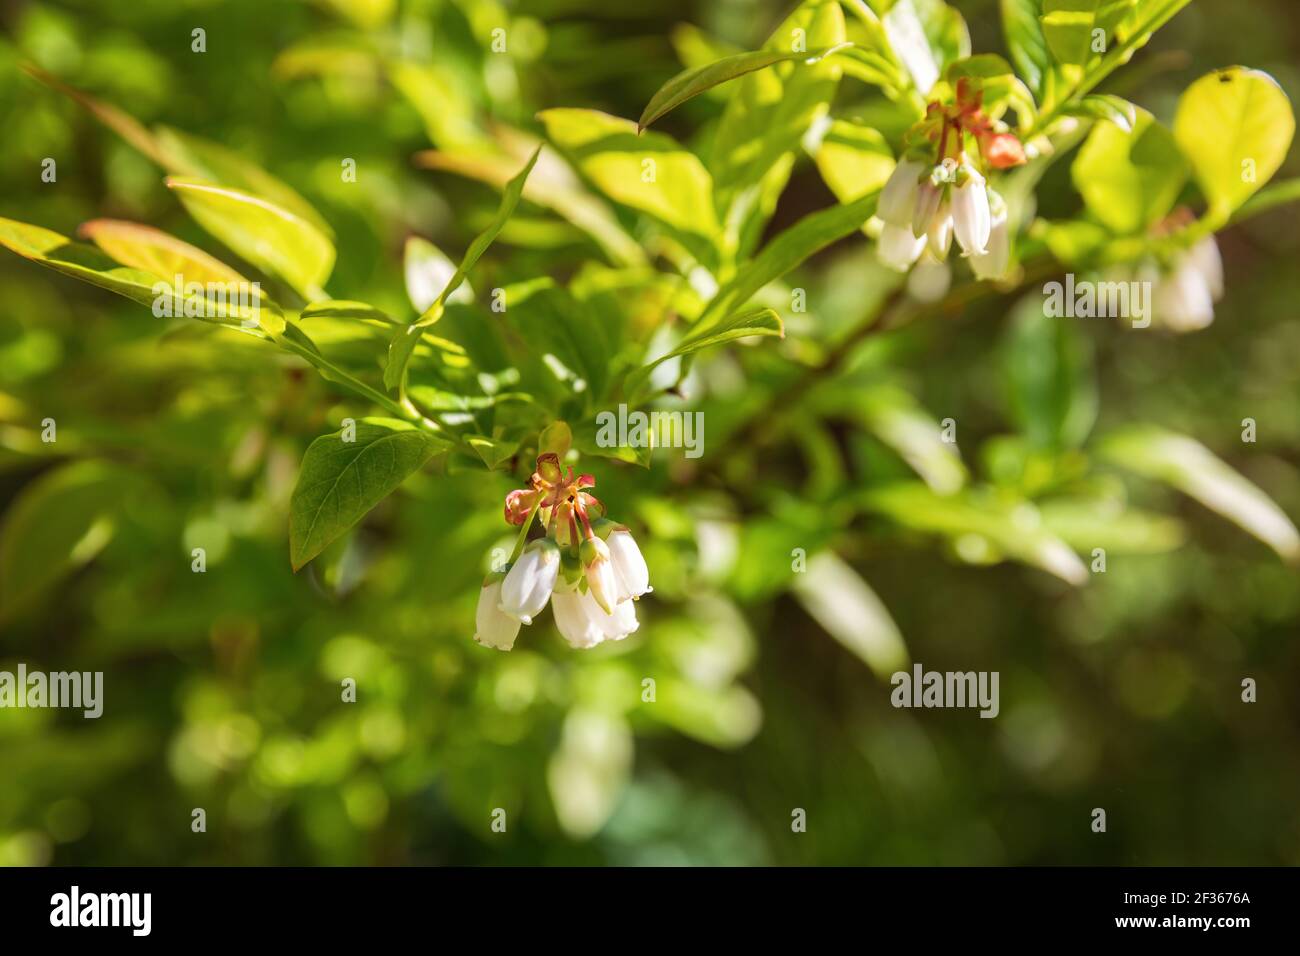 Northern highbush blueberry flowering bush (Vaccinium corymbosum) Stock Photo